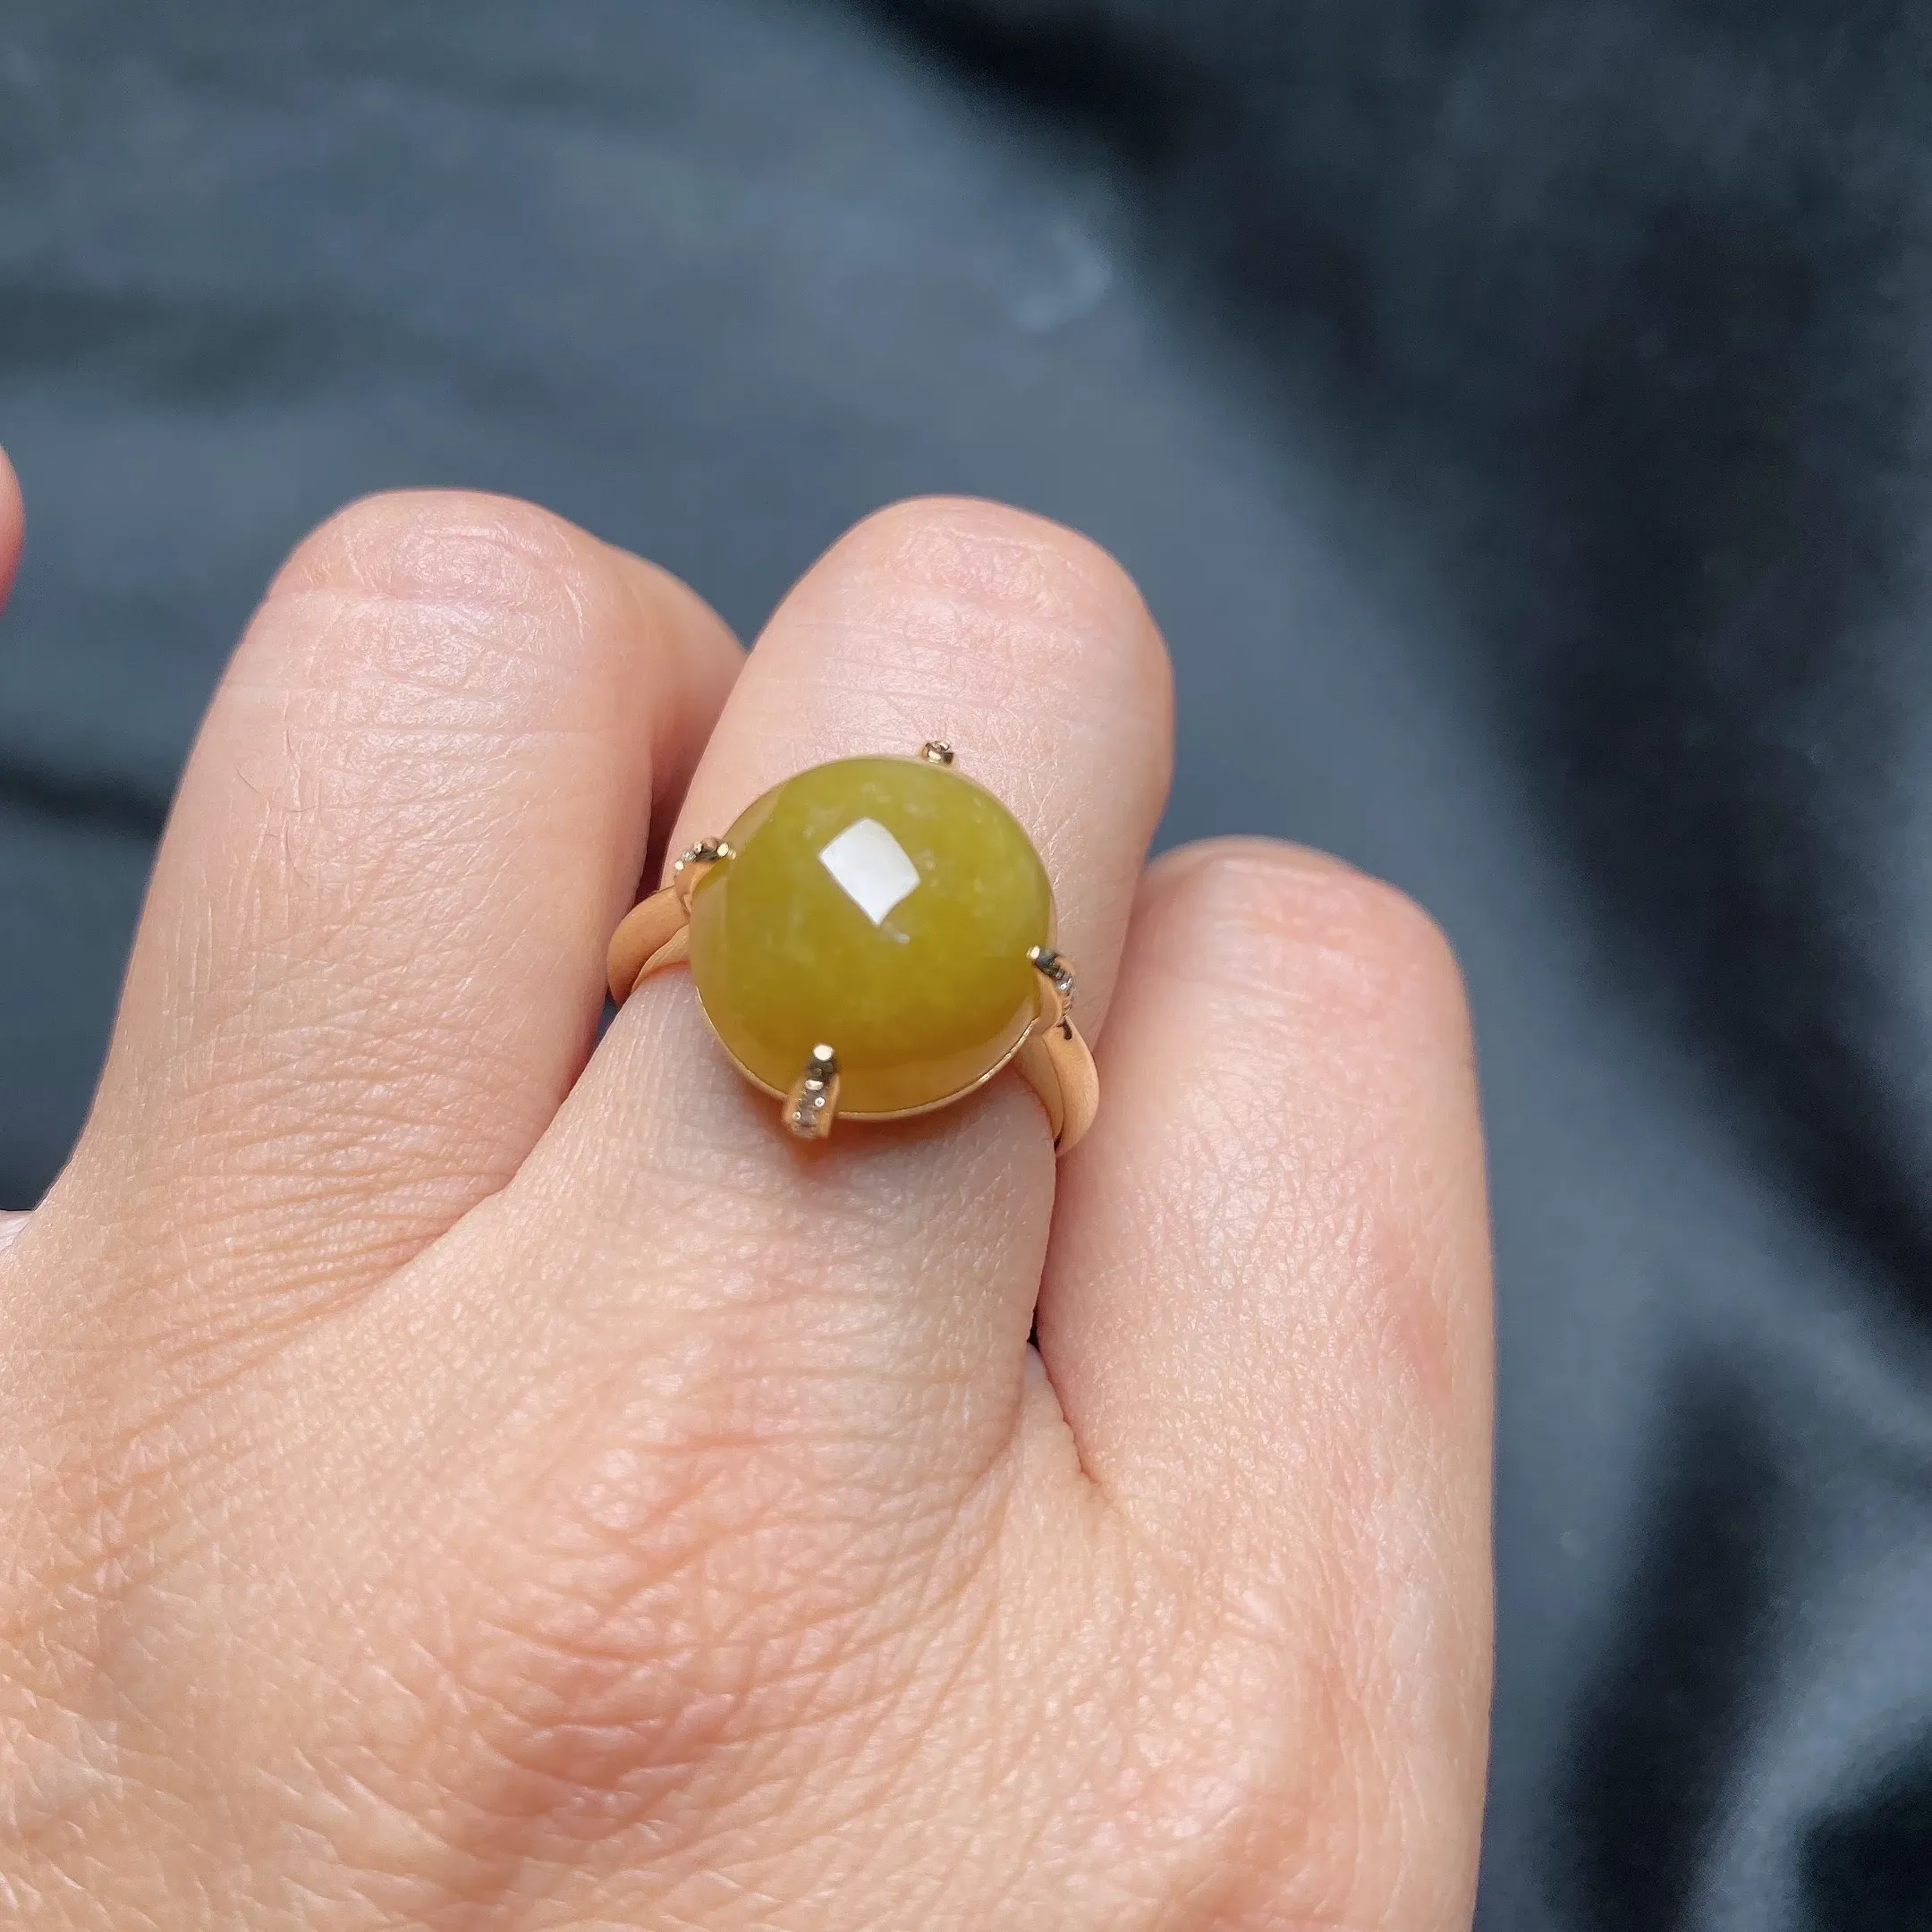 18K黄金镶嵌翡翠A货冰糯种黄翡饱满蛋面戒指，裸石尺寸15×14×8.5 mm。整体尺寸16×14.5×8.8 mm